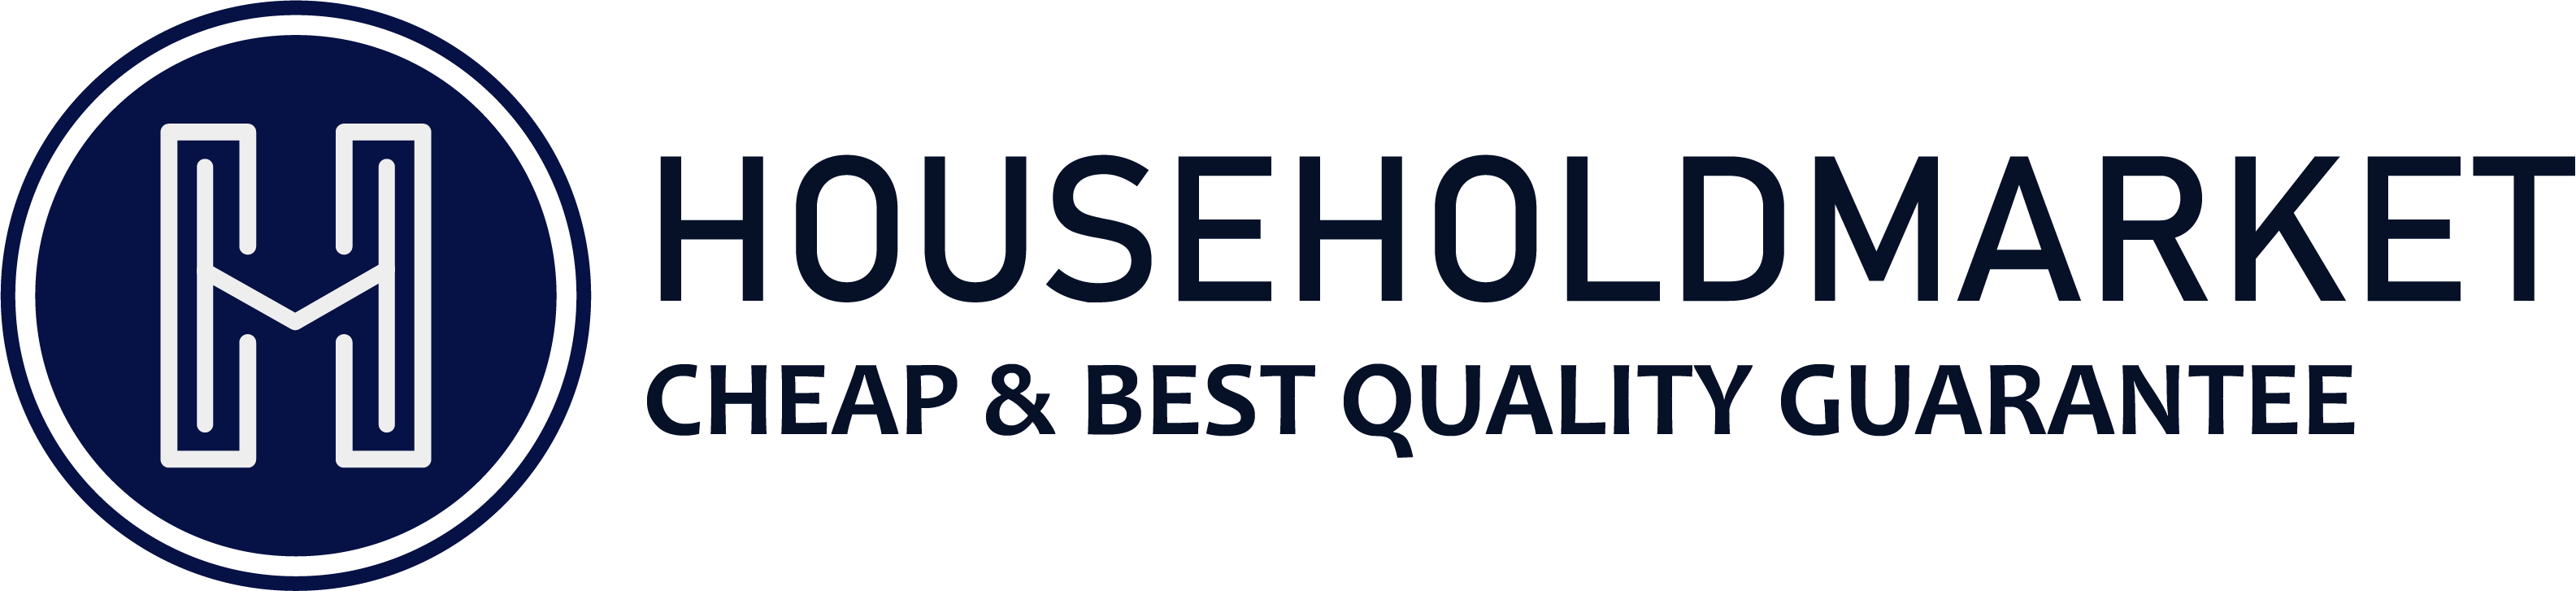 household market logo